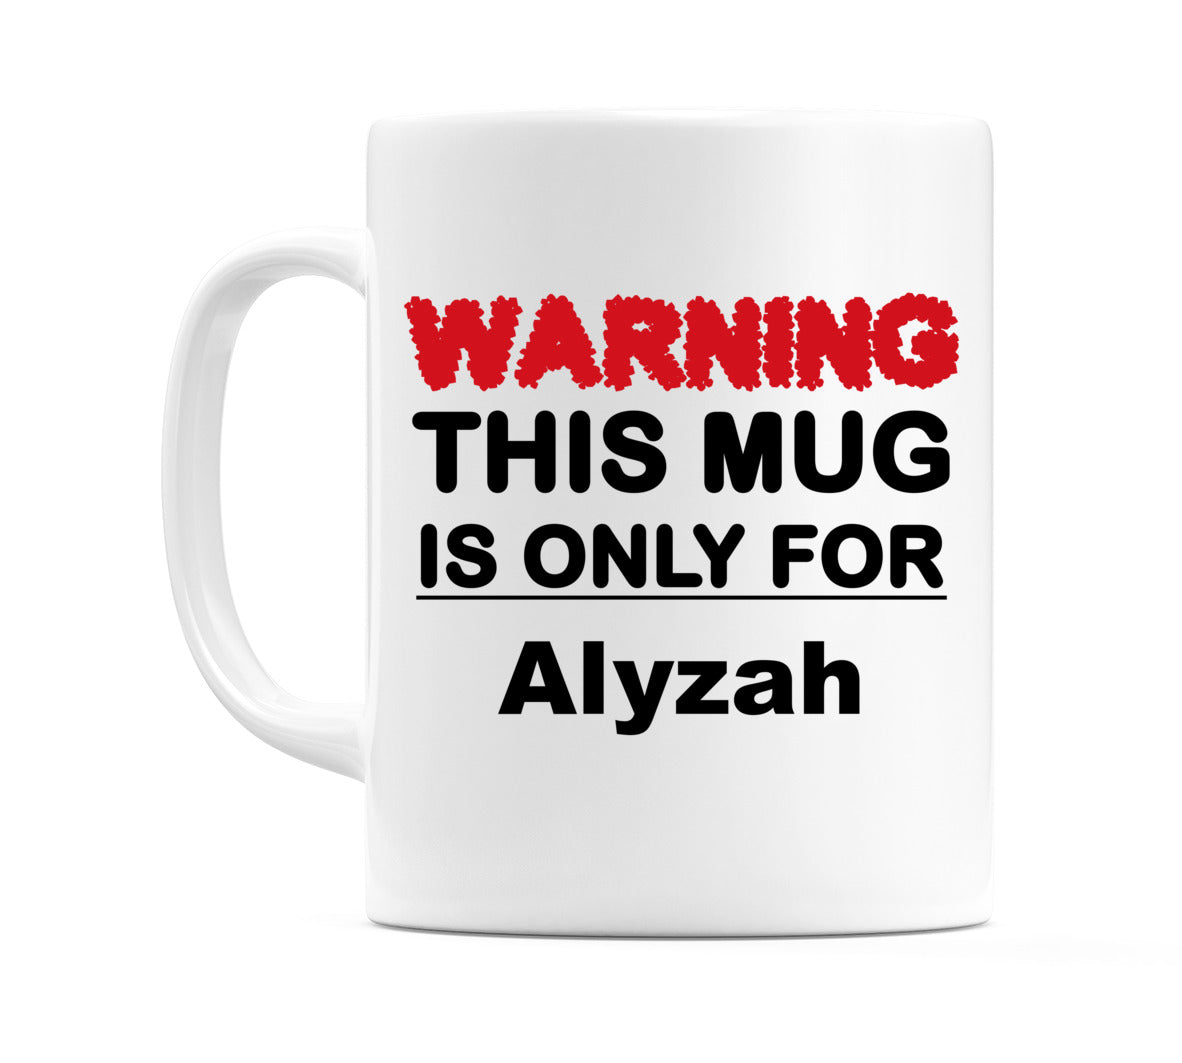 Warning This Mug is ONLY for Alyzah Mug